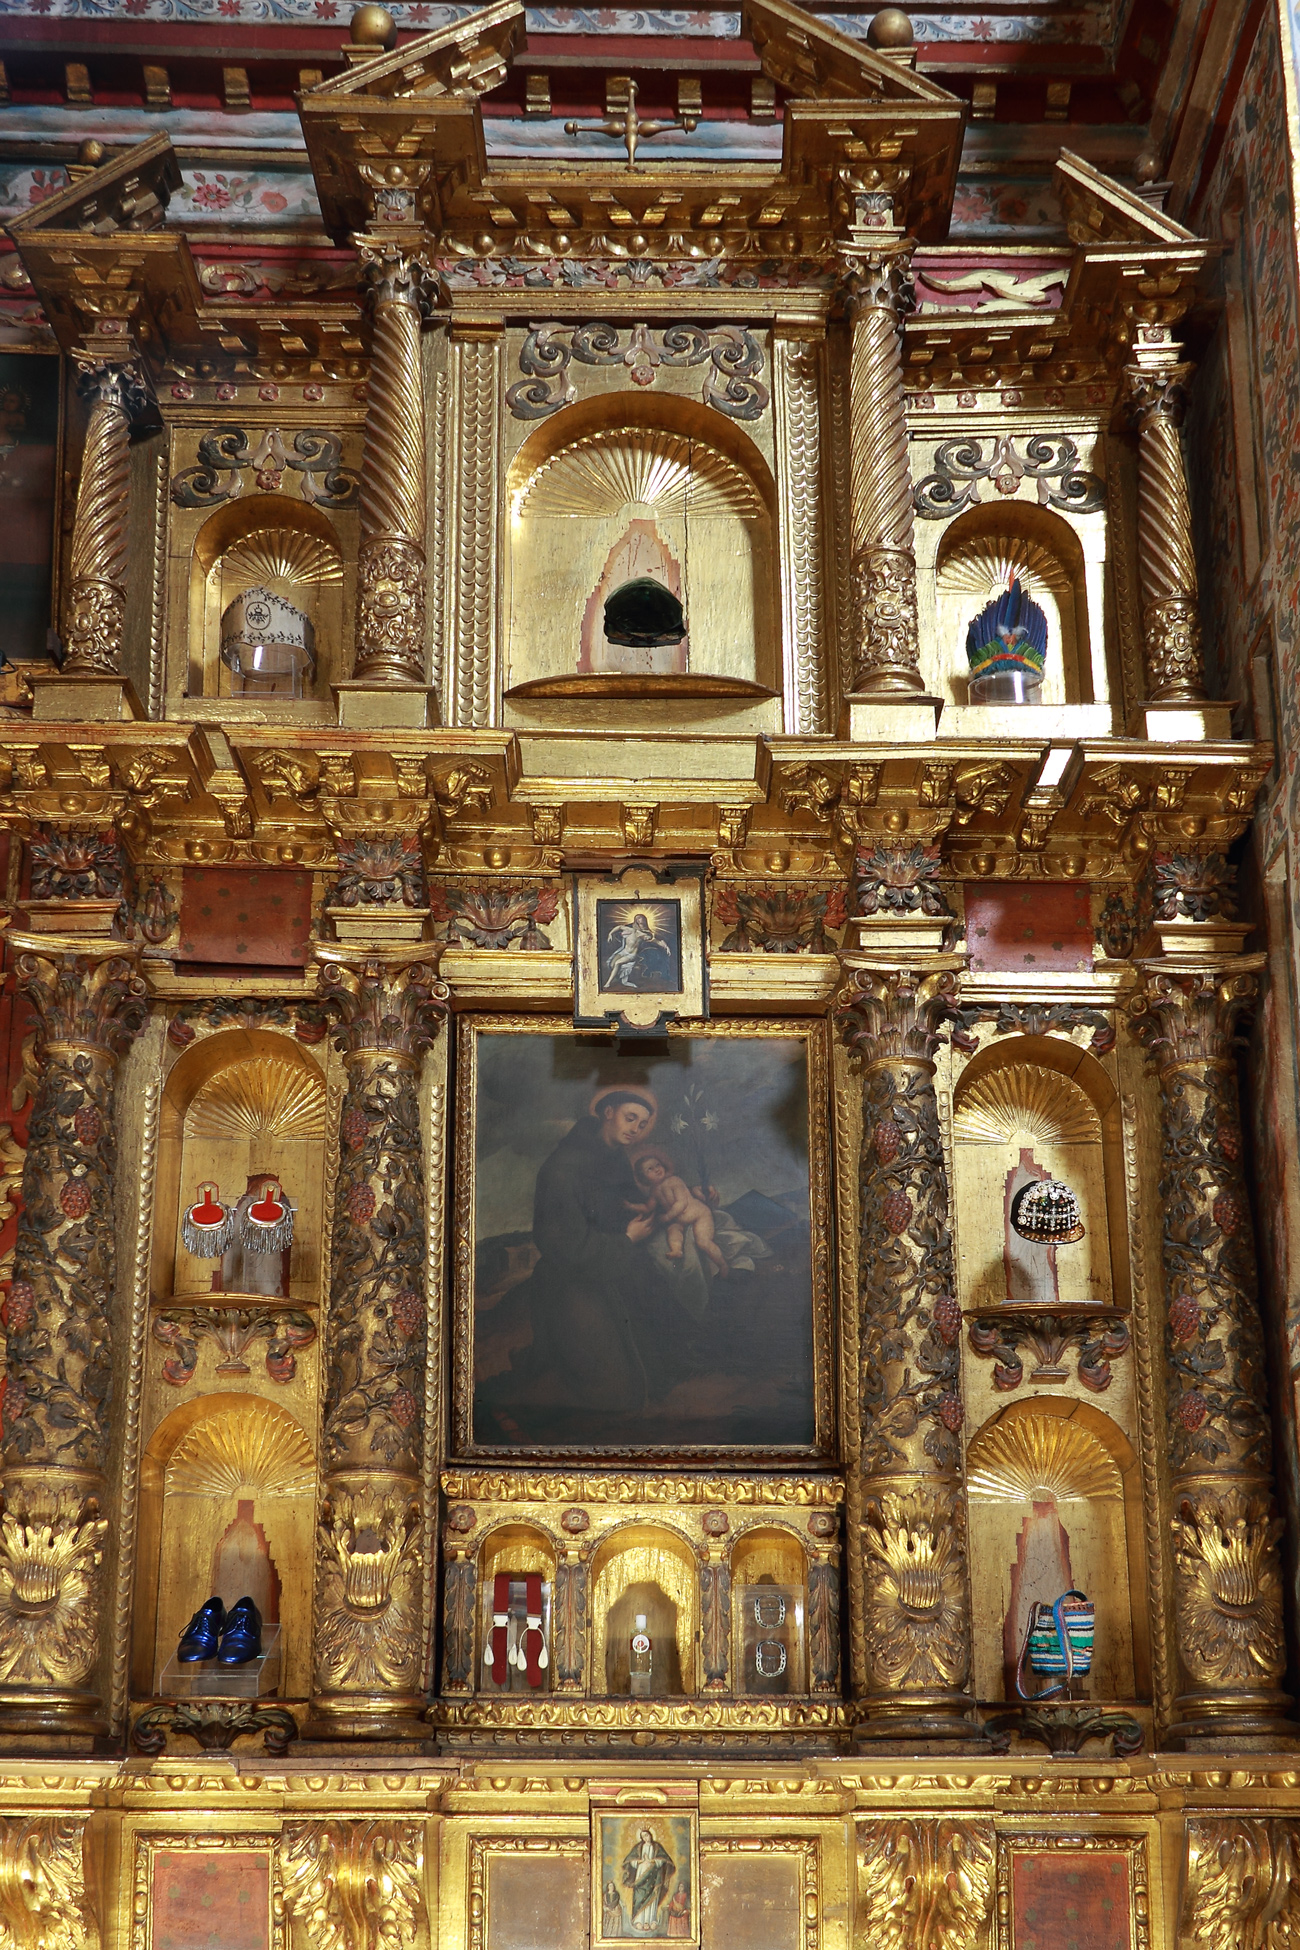 Intervención con accesorios de moda y vestuario en los nichos del Retablo de San Antonio de Padua